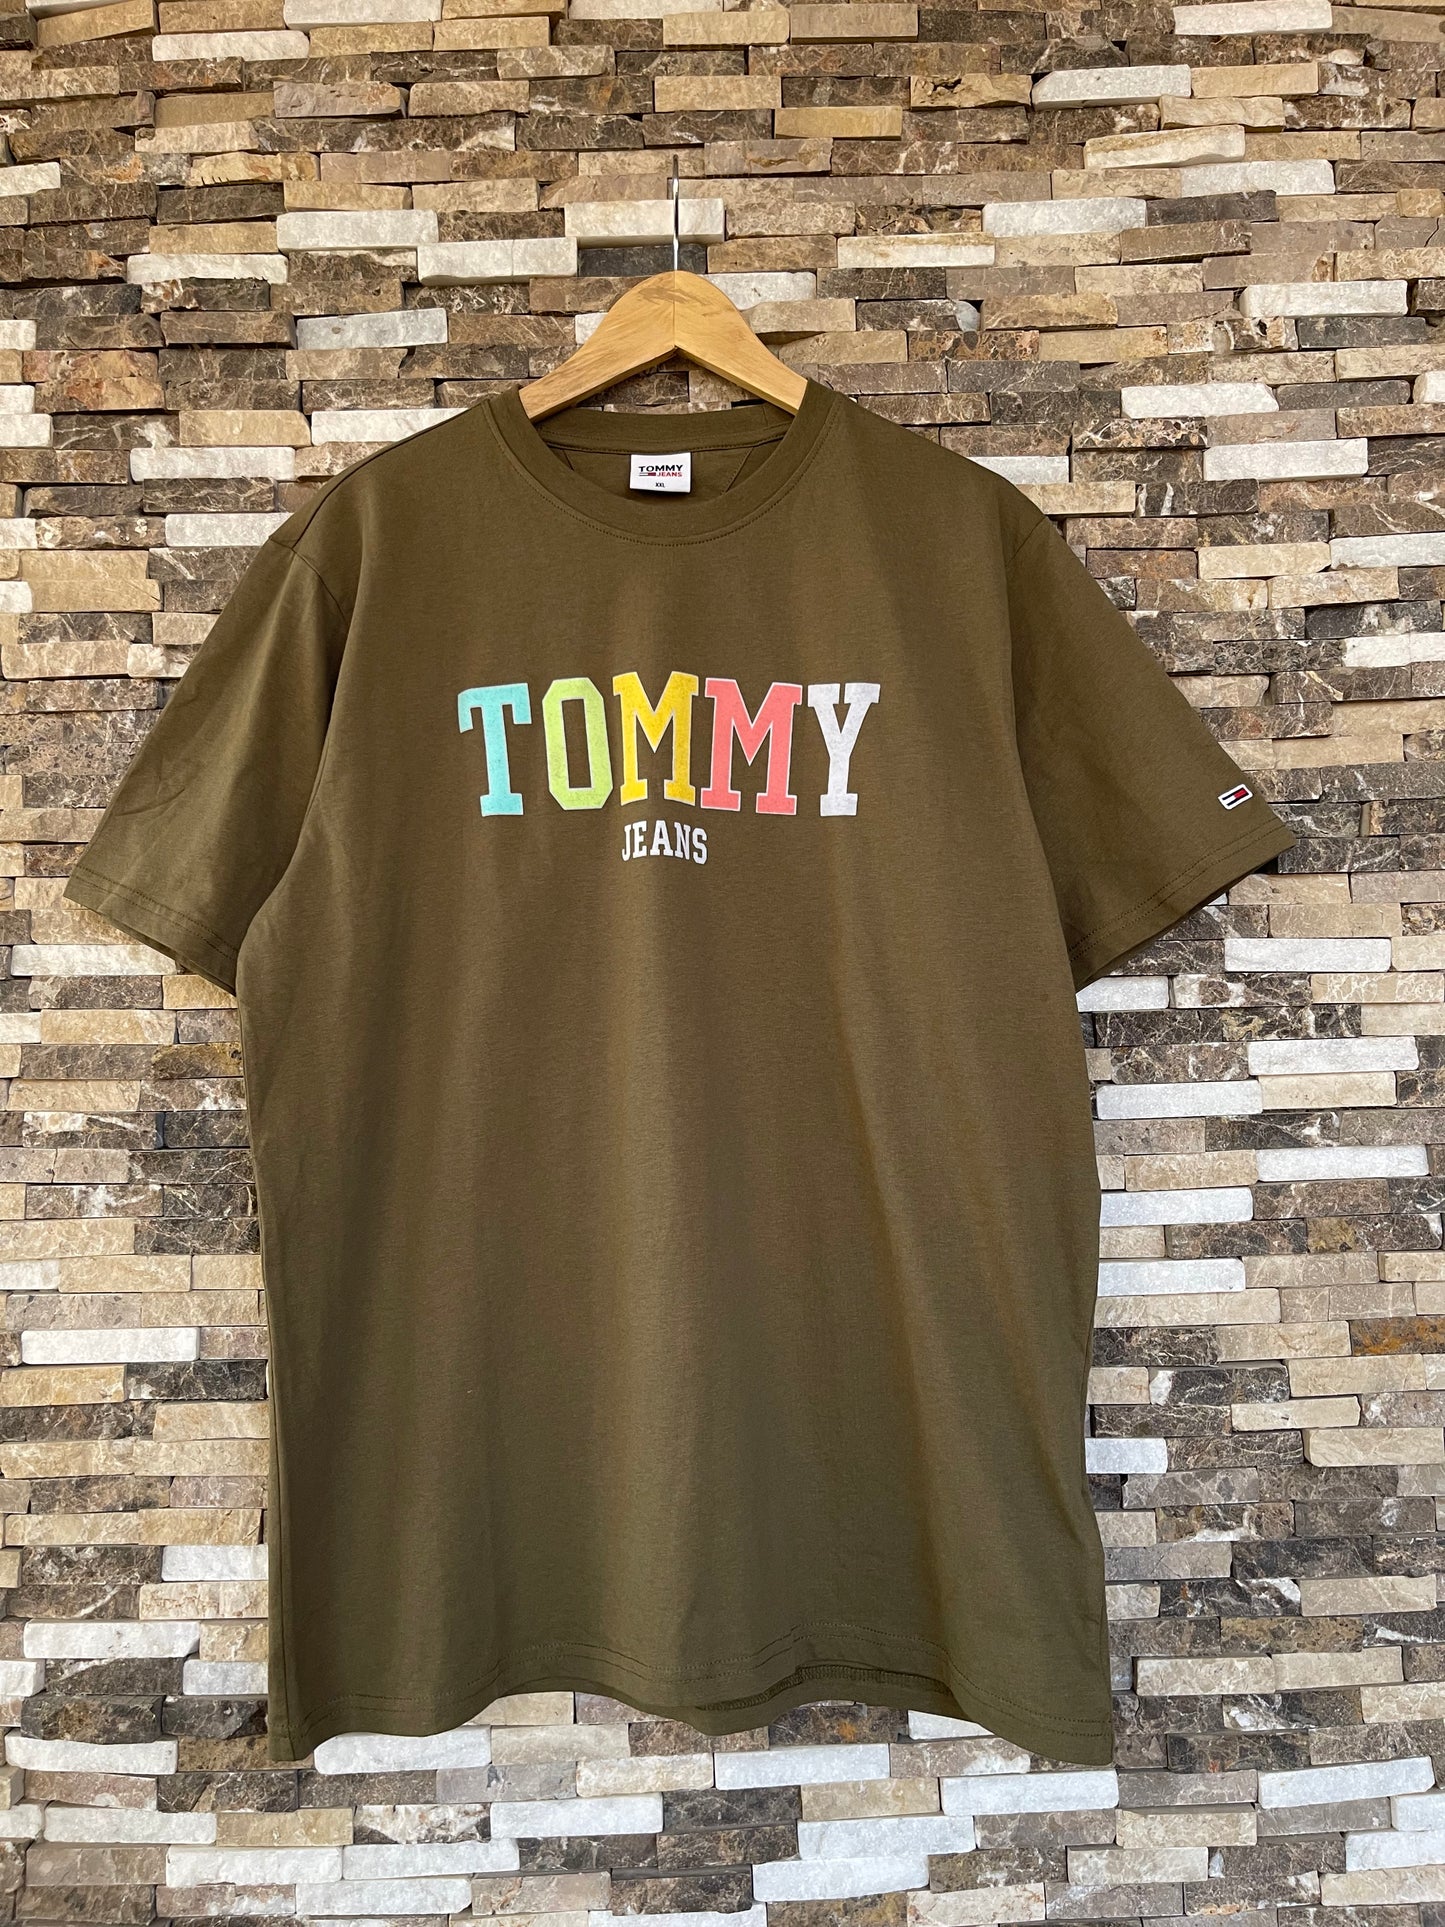 TOMMY Jeans Original Men T-Shirt